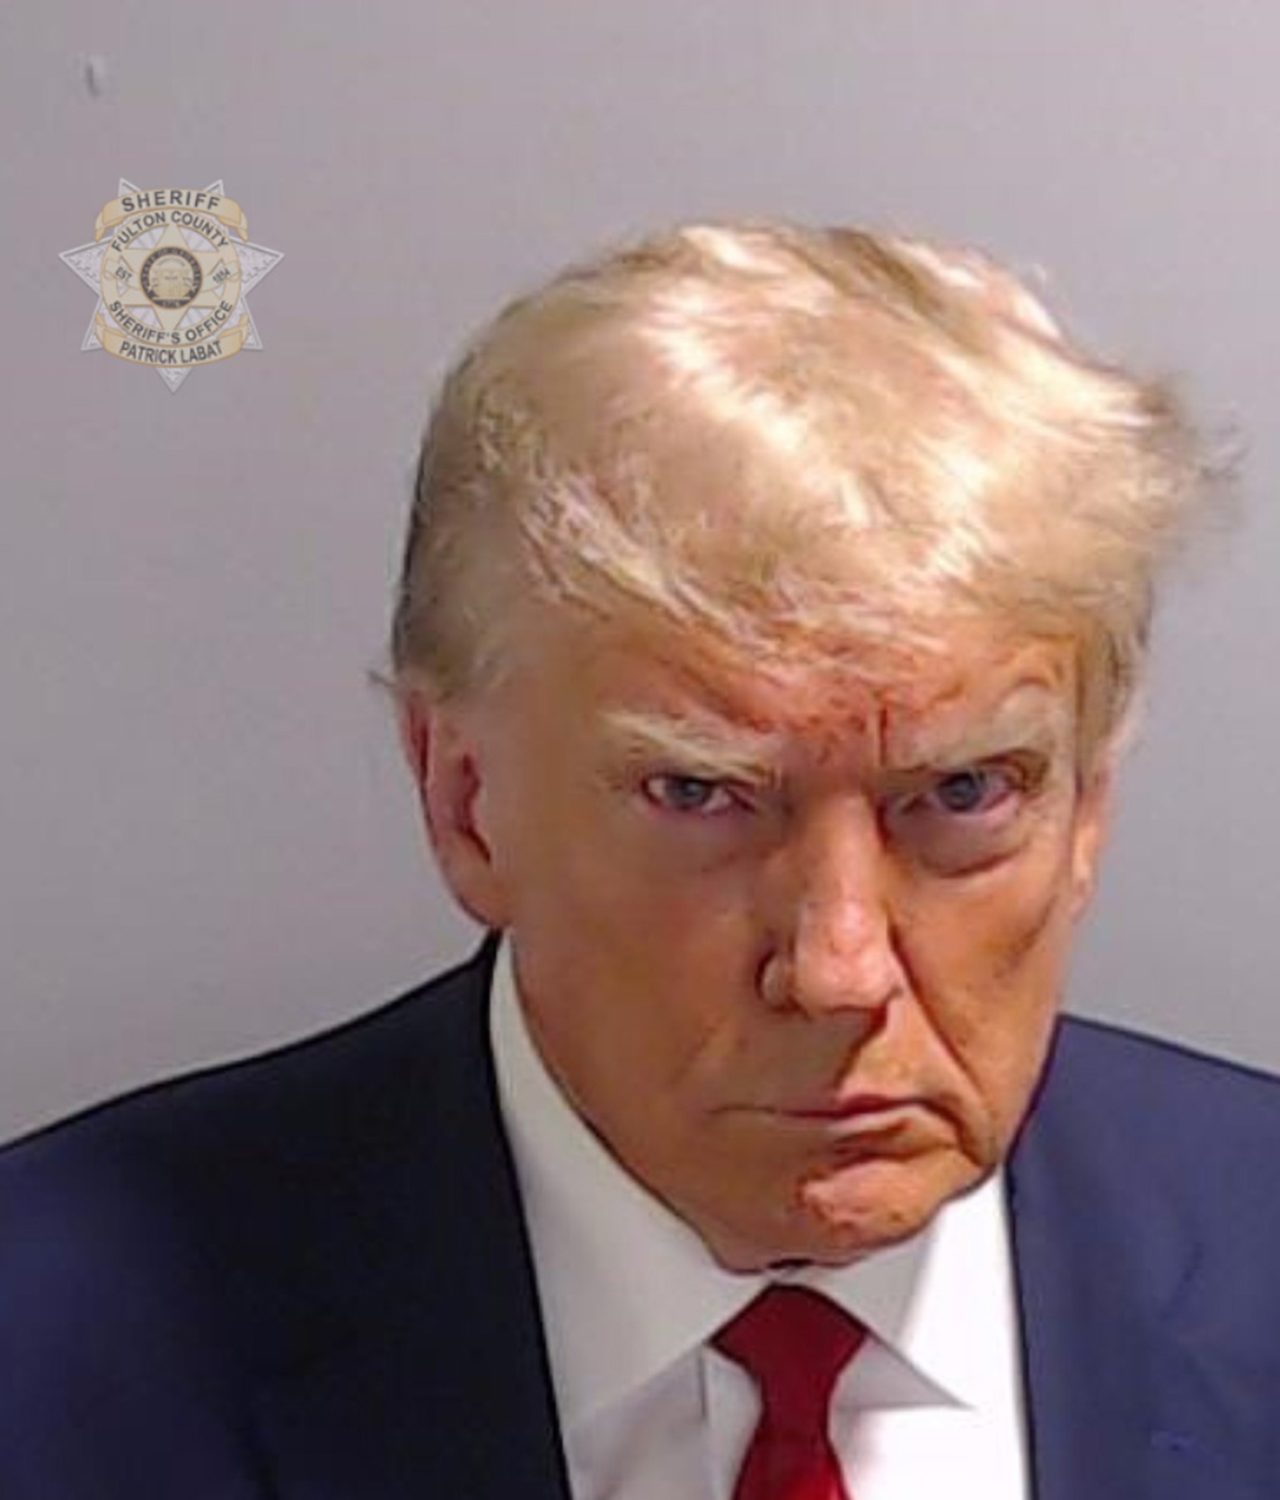 Donald Trump récolte plusieurs millions de dollars grâce à sa photo judiciaire